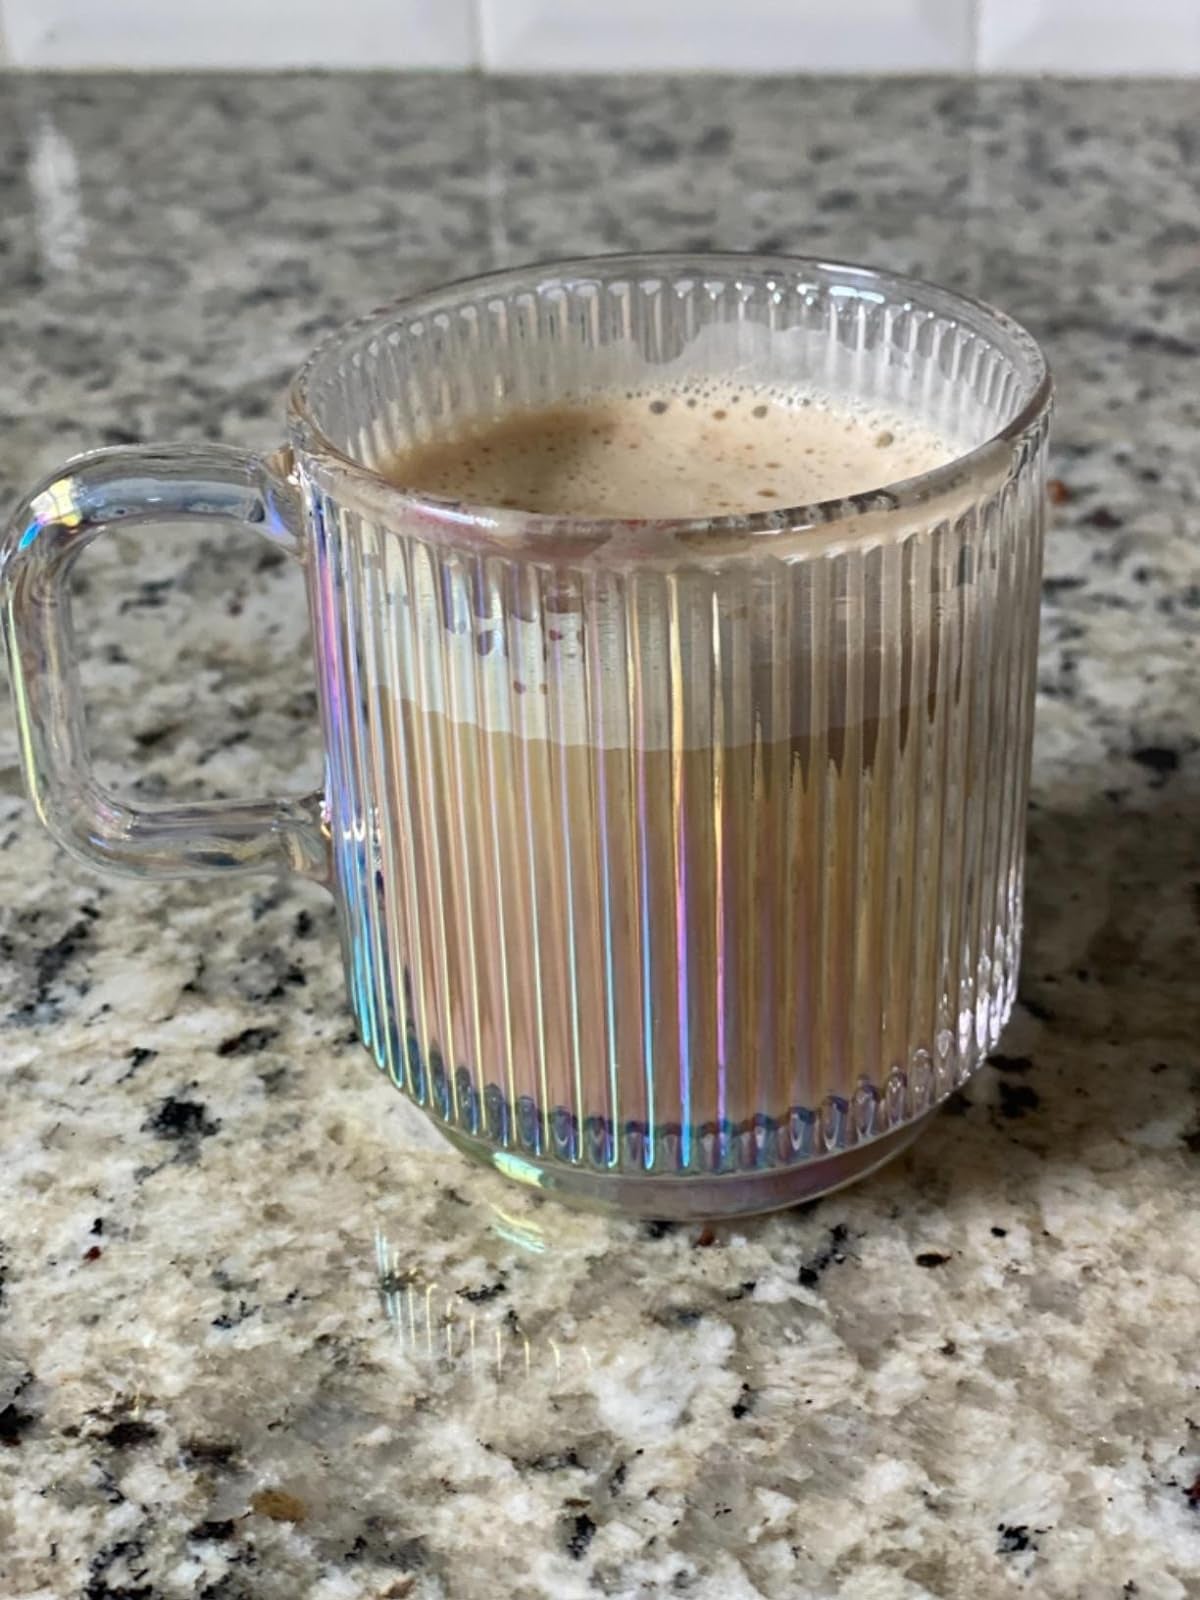 an iridescent striped glass mug